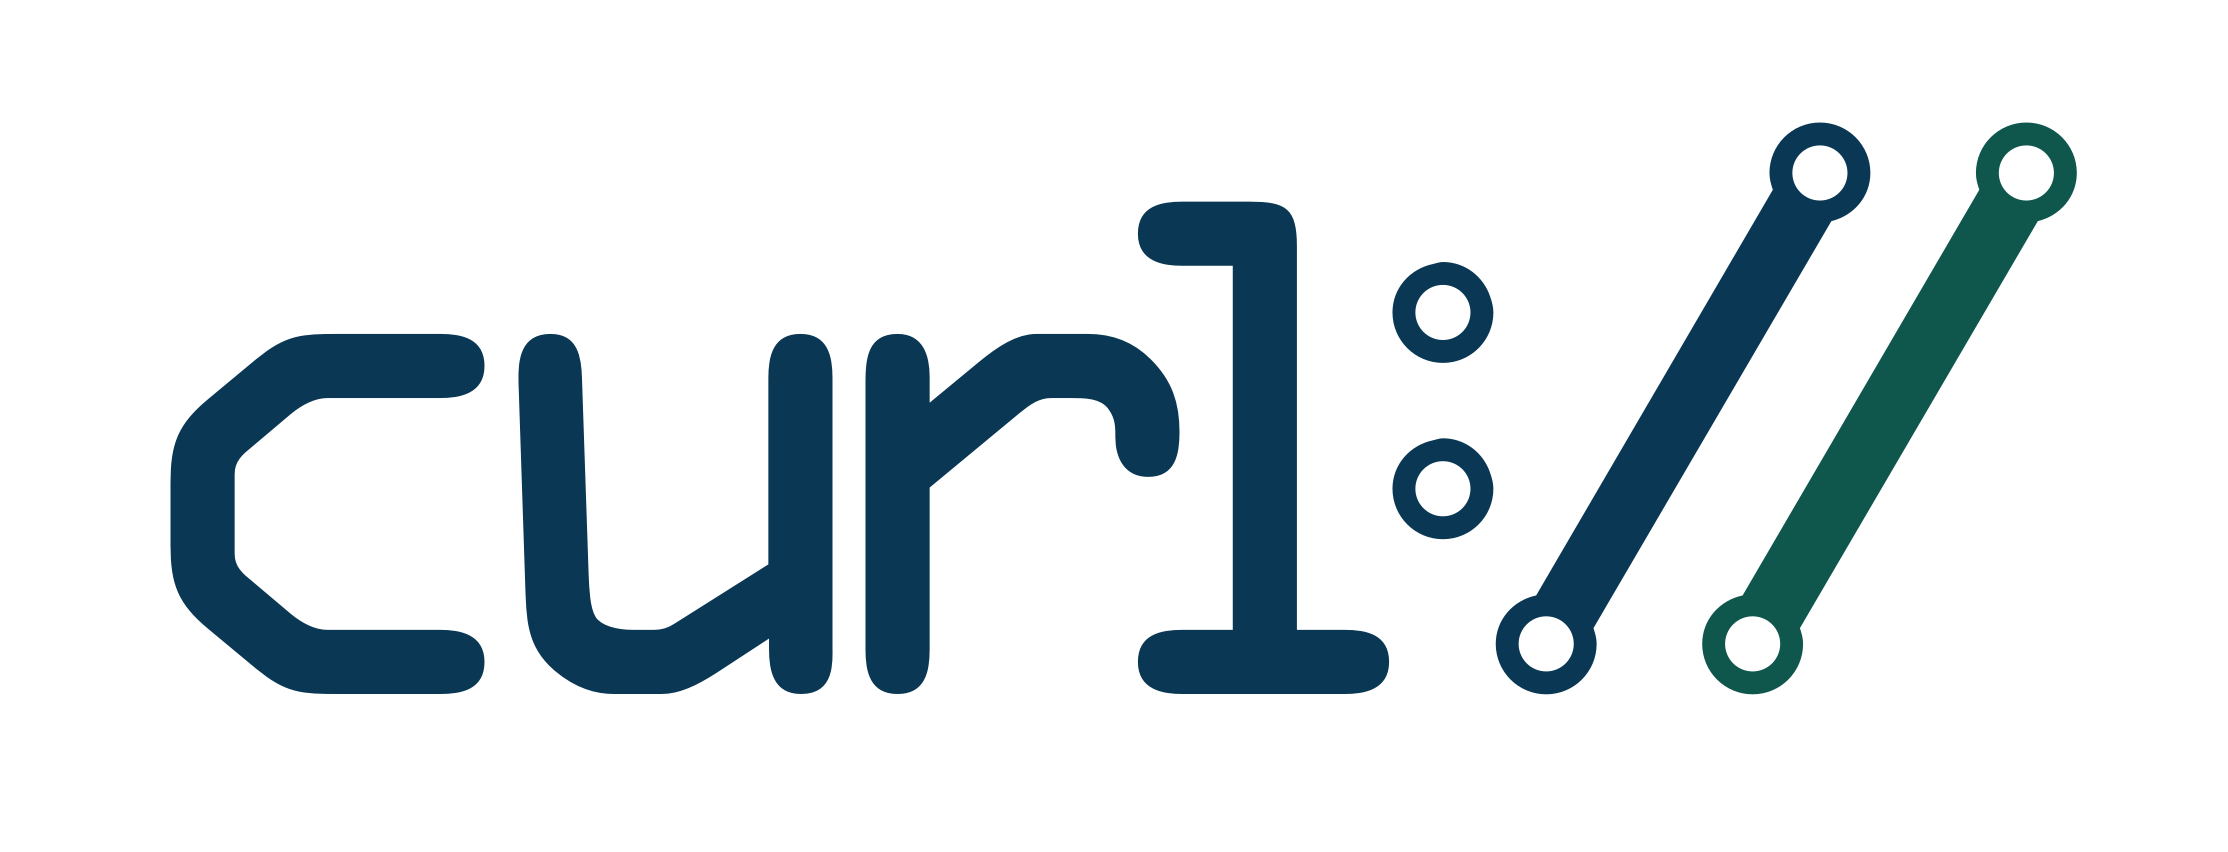 Curl haxx. Curl logo. Curl библиотека. Curl приложение. Curl Commands.